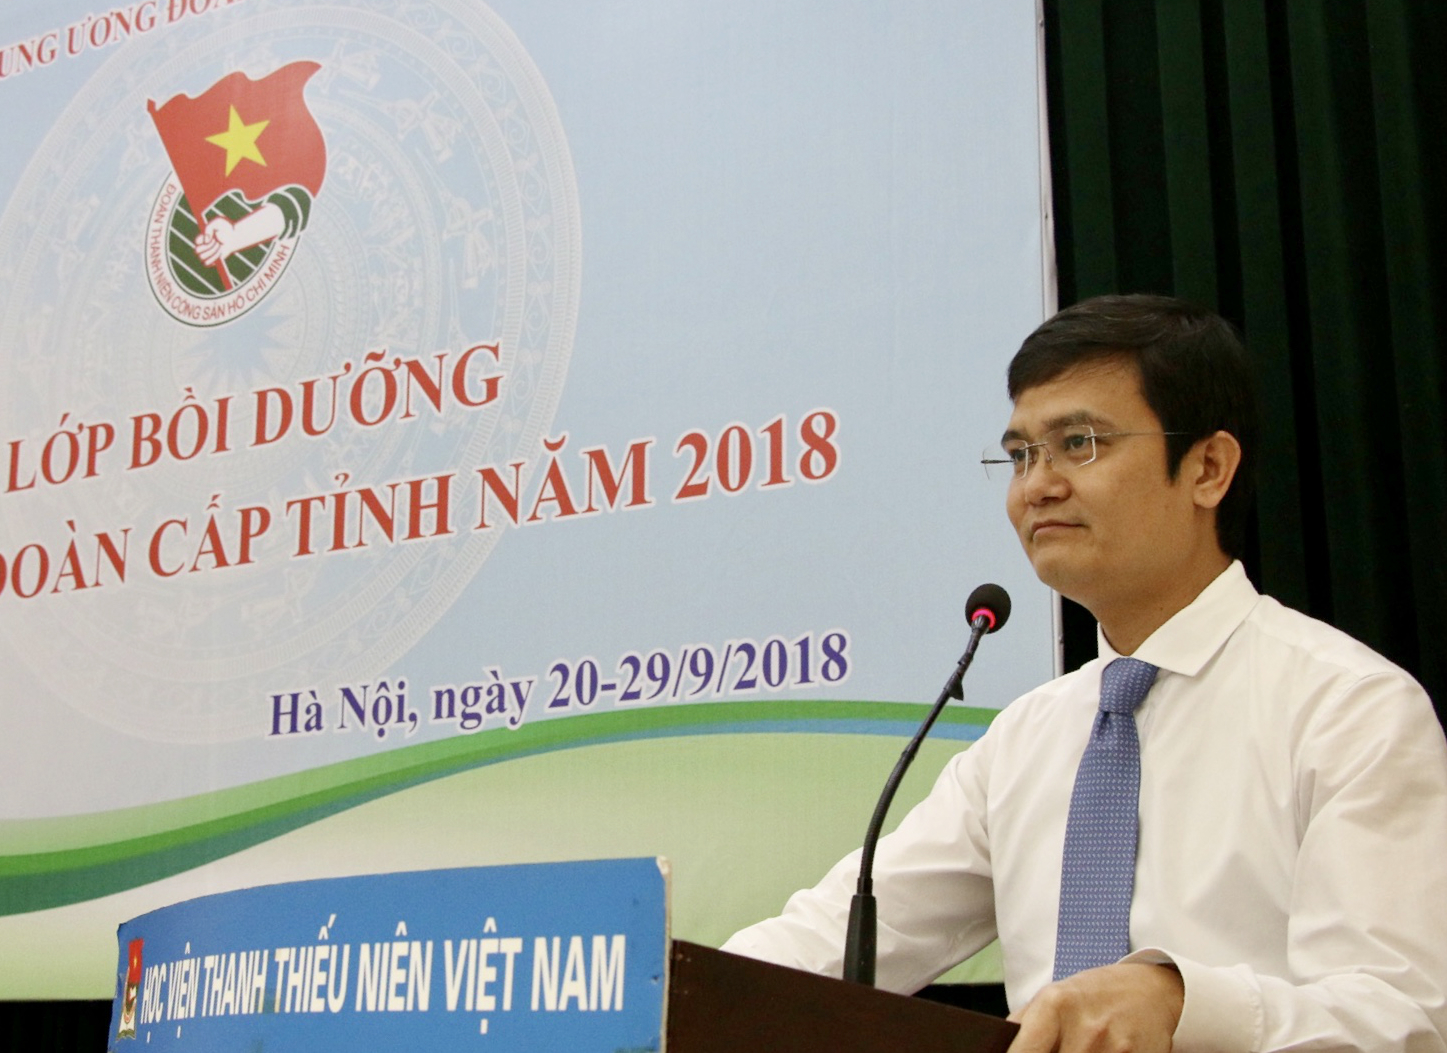 Đồng chí Bùi Quang Huy - Bí thư Trung ương Đoàn phát biểu tại chương trình